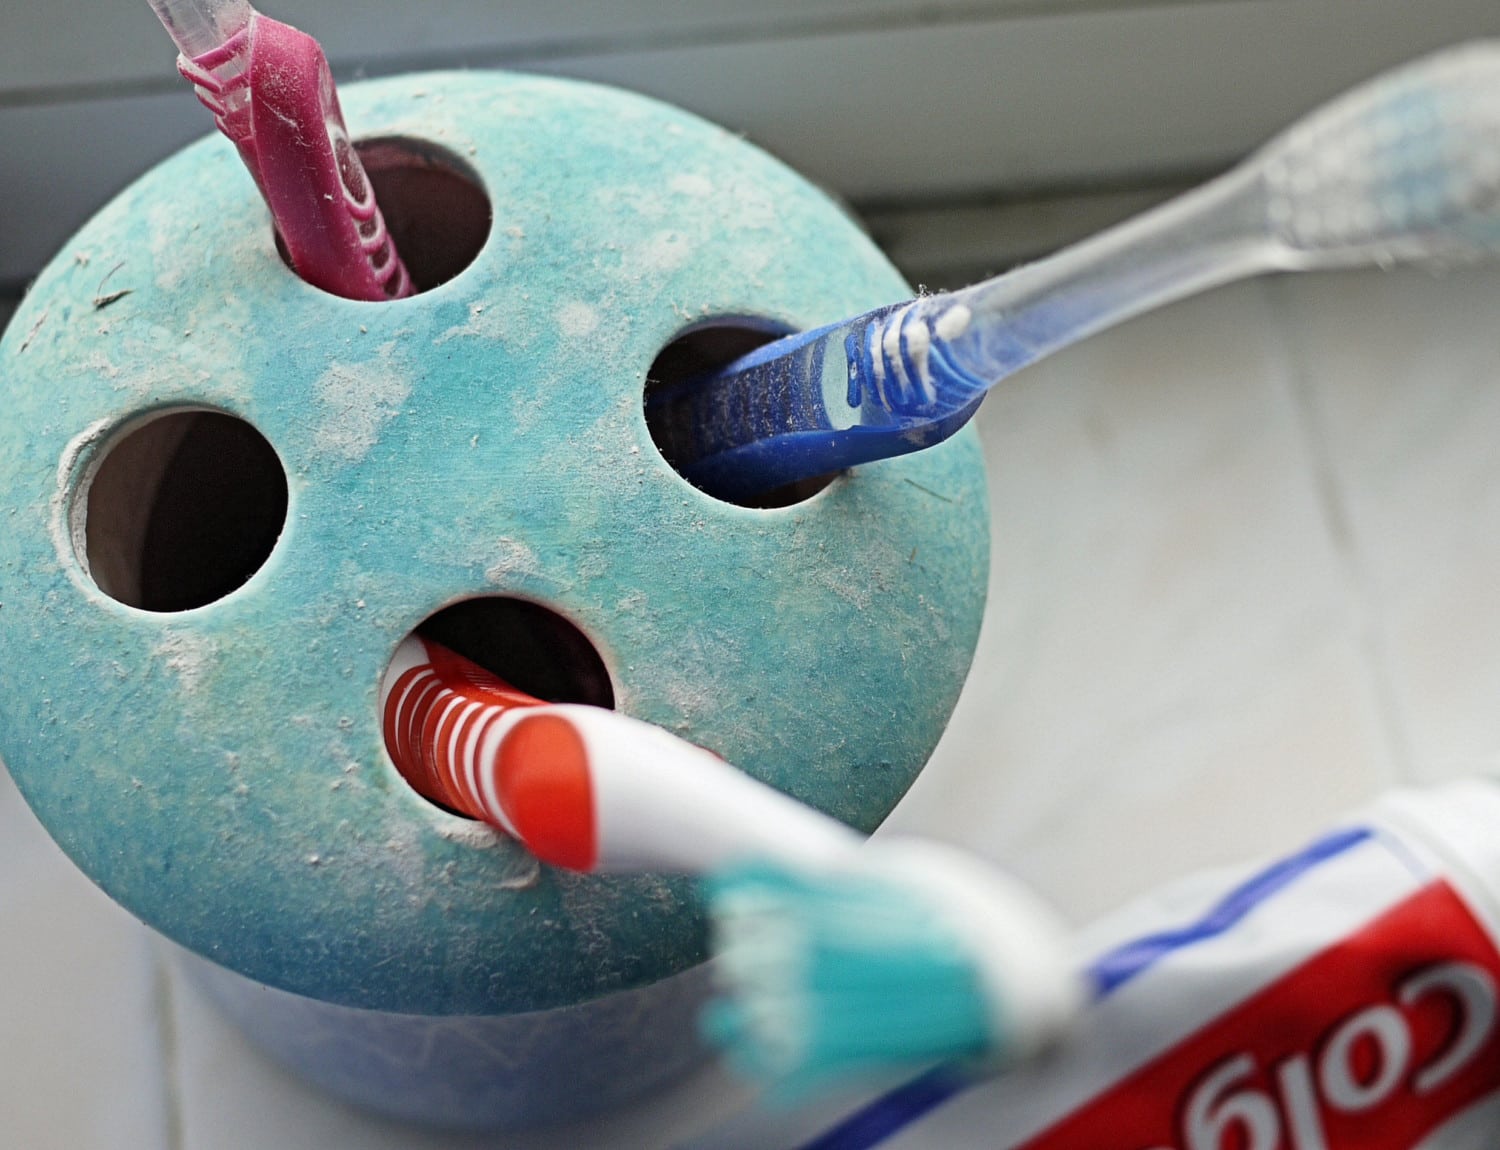 toothbrush holder photo